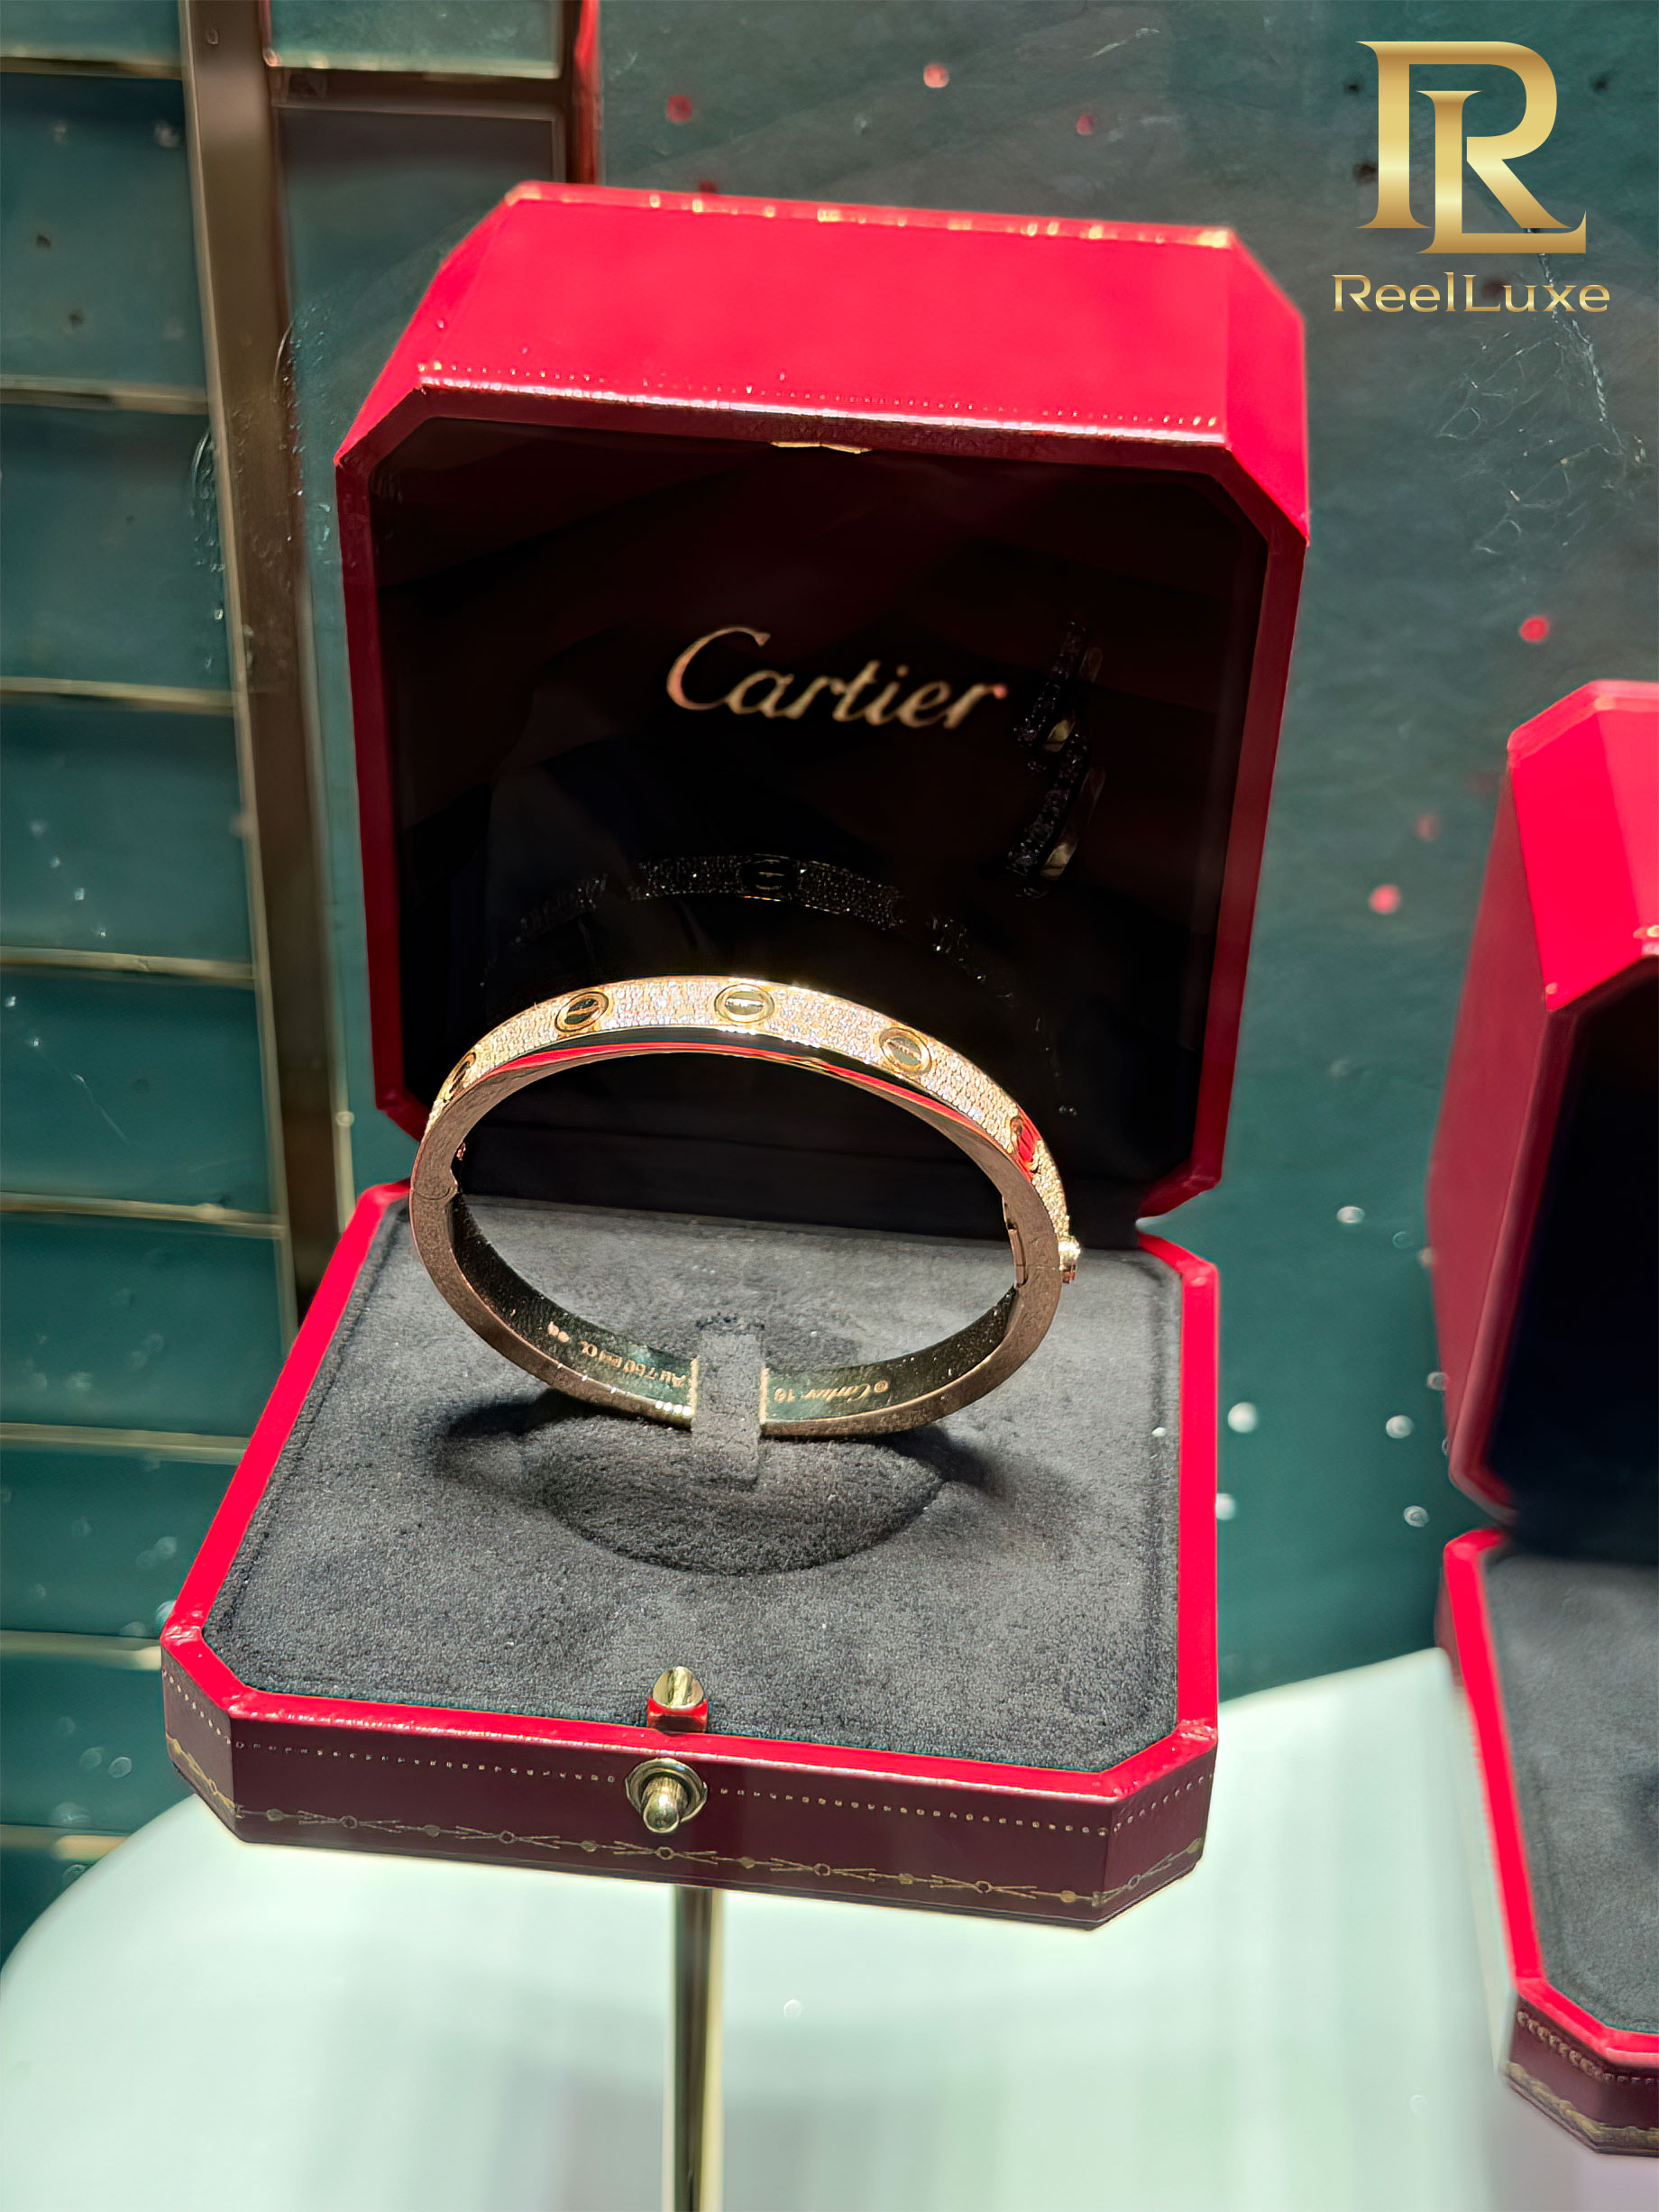 Bracelet LOVE Cartier pavé de diamants, or jaune 18 carats – Boutique Cartier Firenze – Florence, Italie – 1